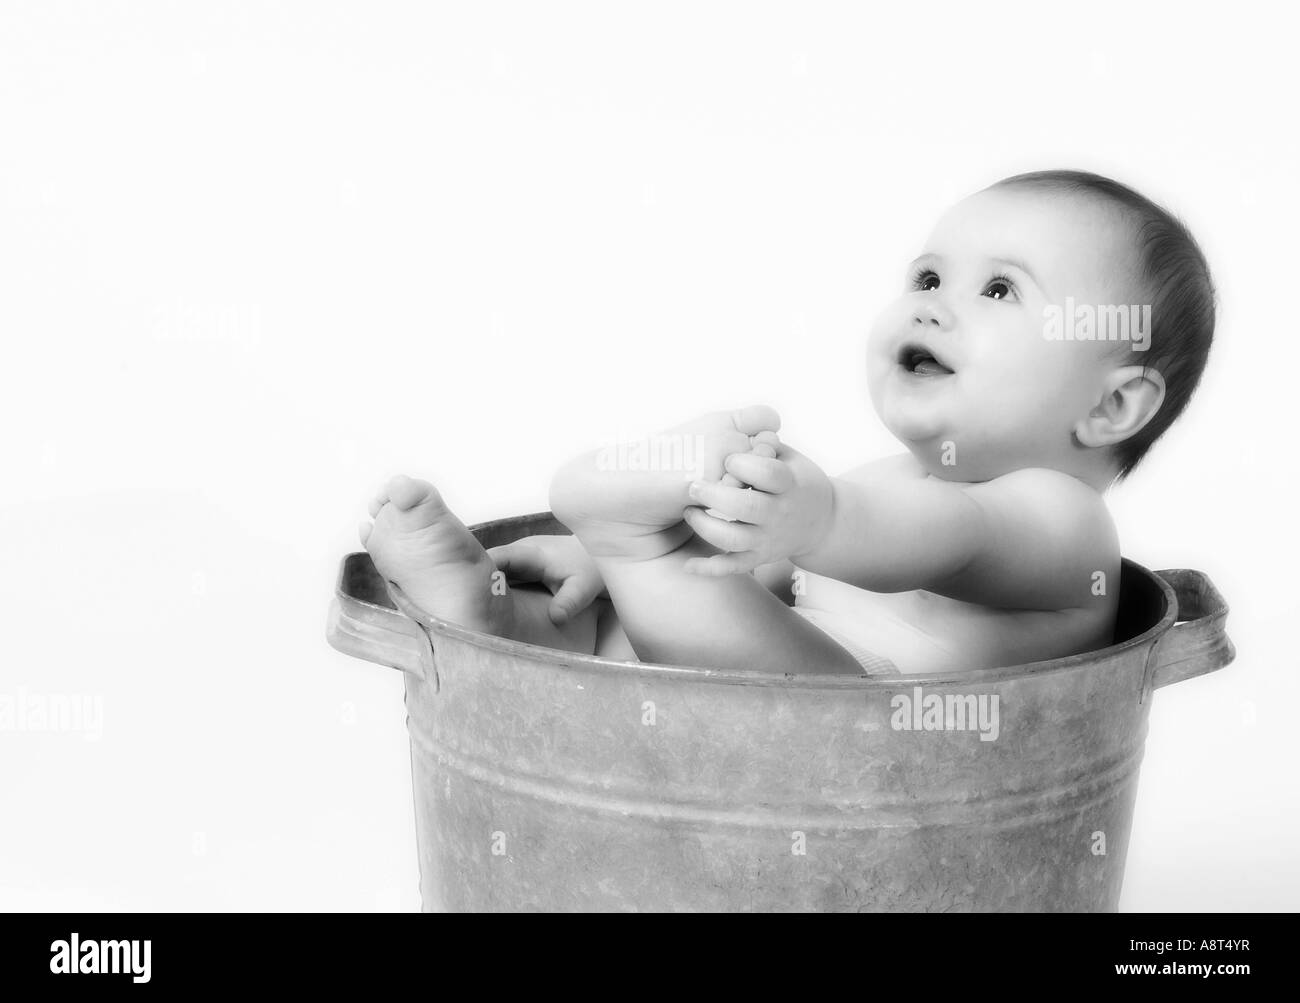 Bébé en vieille bassine Photo Stock - Alamy